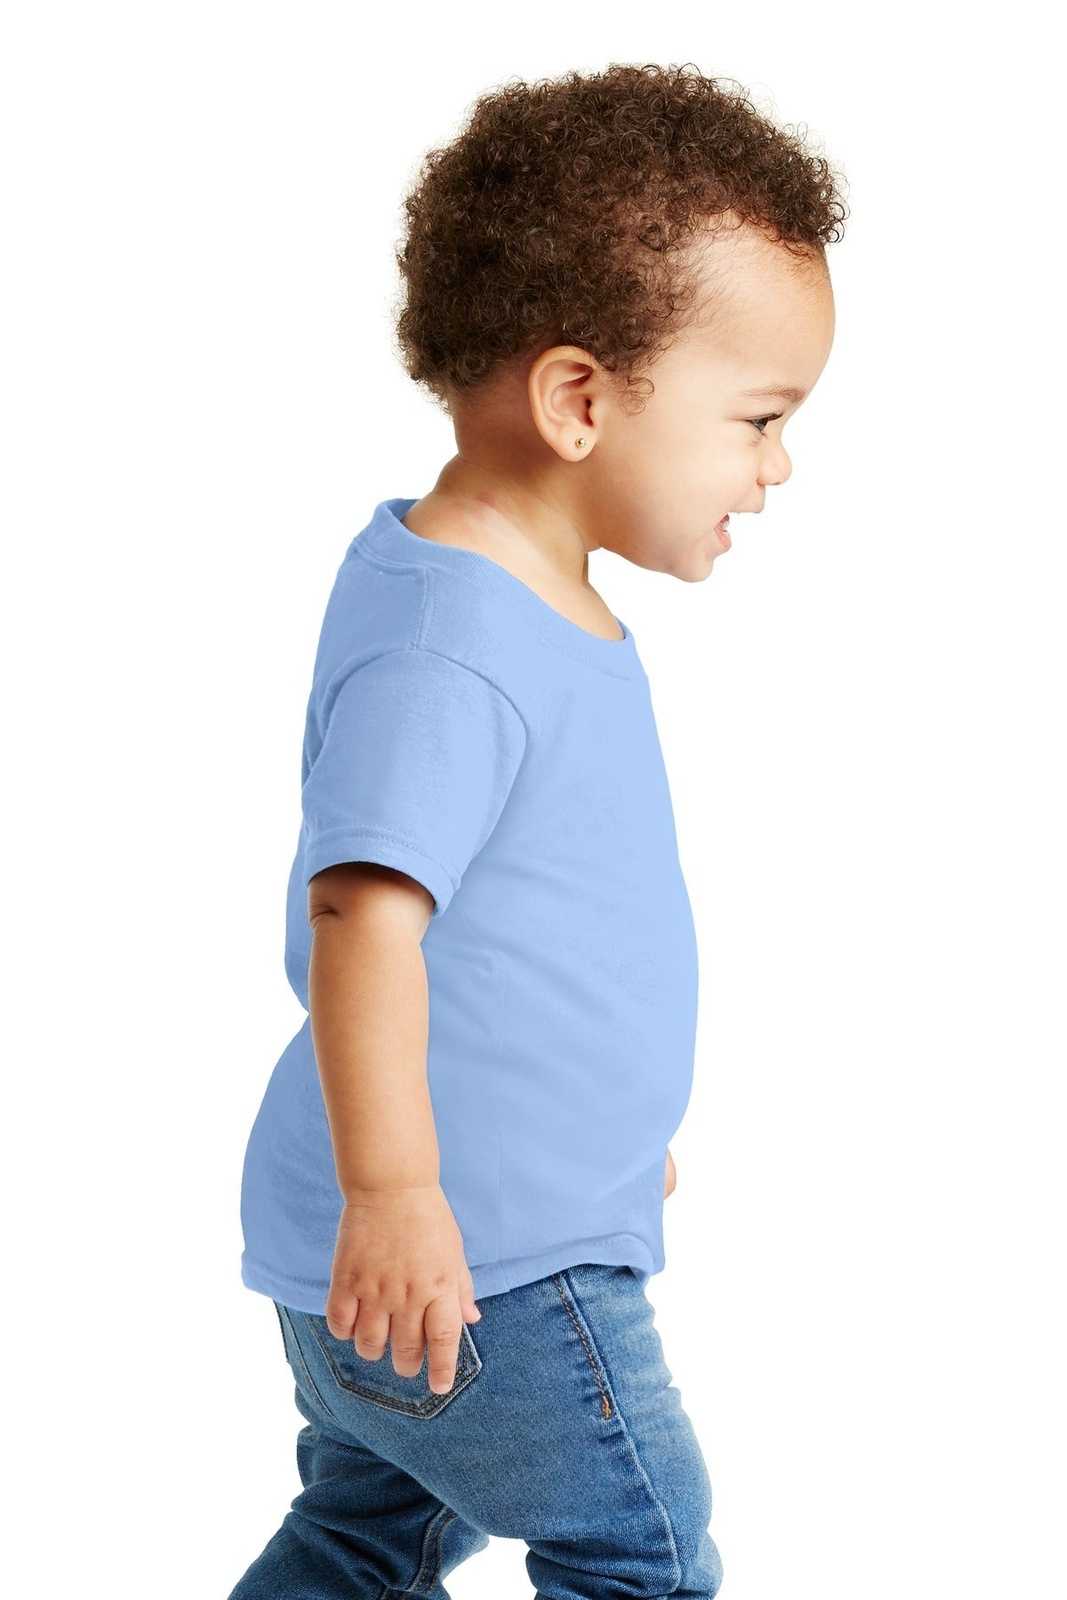 Gildan 5100P Toddler Heavy Cotton 100% Cotton T-Shirt - Light Blue - HIT a Double